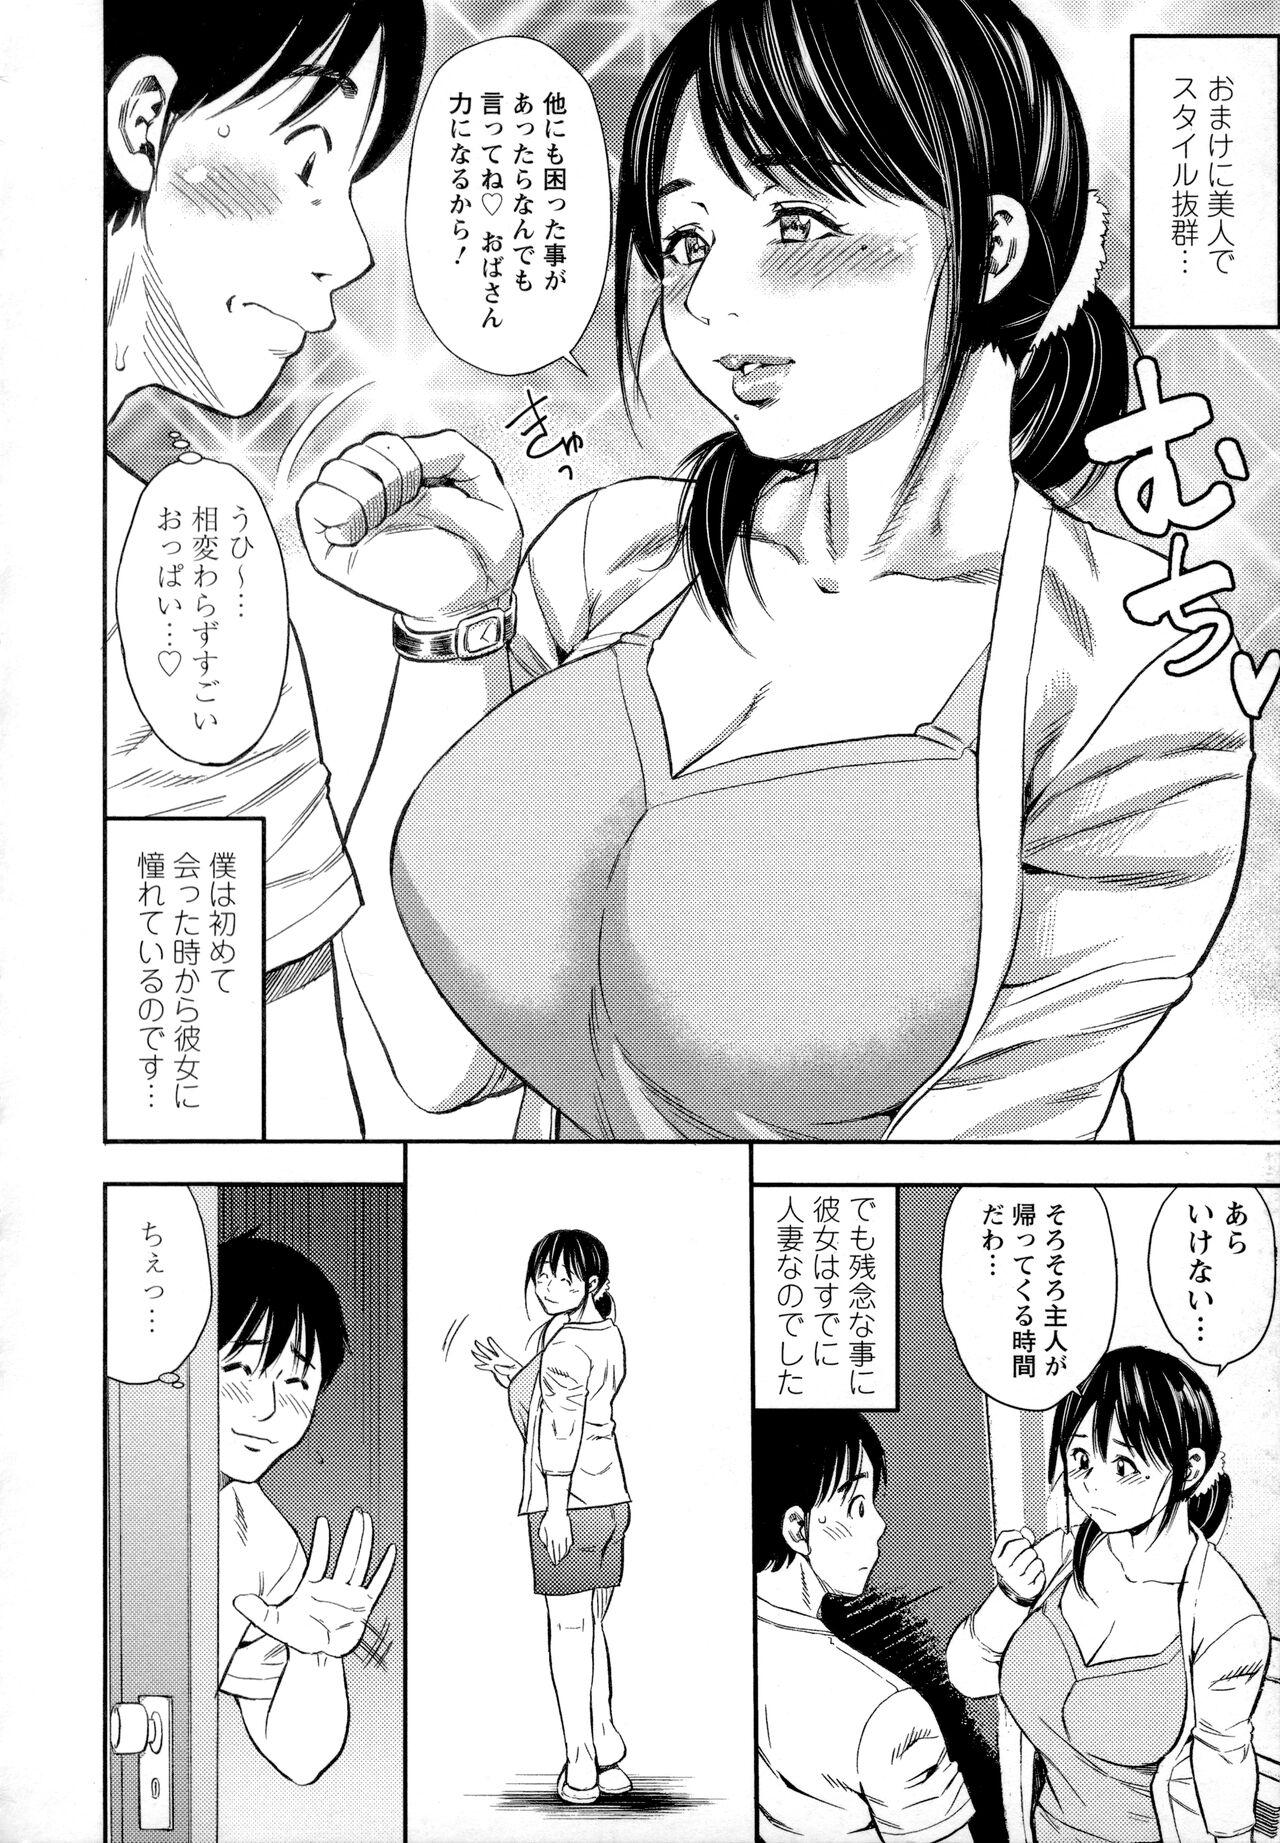 Gayclips Yoridori Tsumamigui Slut Porn - Page 3